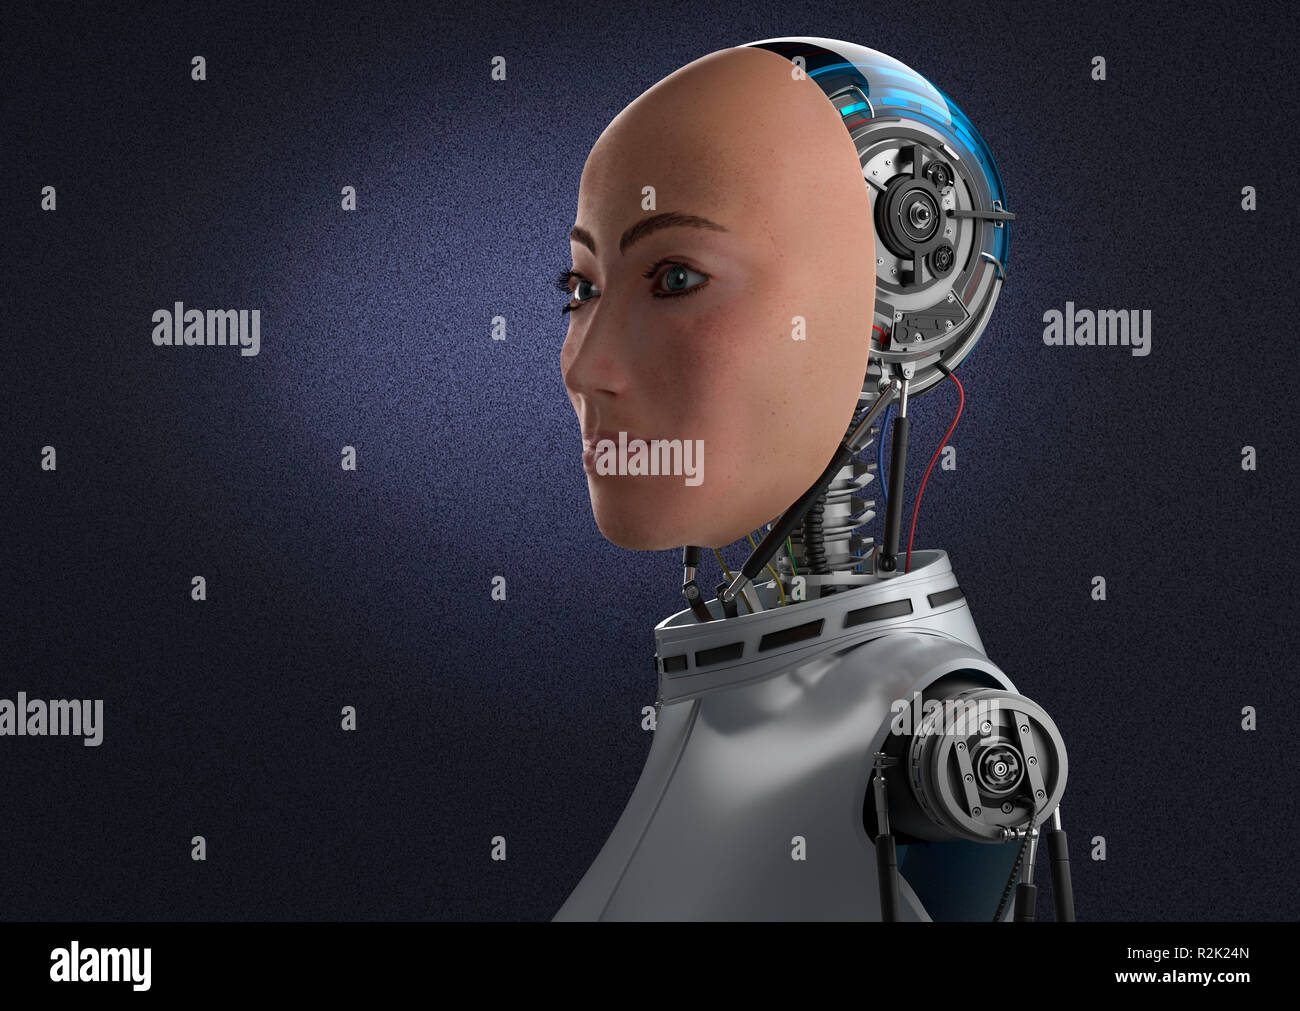 Robot femmina Android con faccia realistica, meccanica posteriore della testa e la parte superiore del corpo. Semi-close-up vista laterale, contro viola scuro dello sfondo. Foto Stock